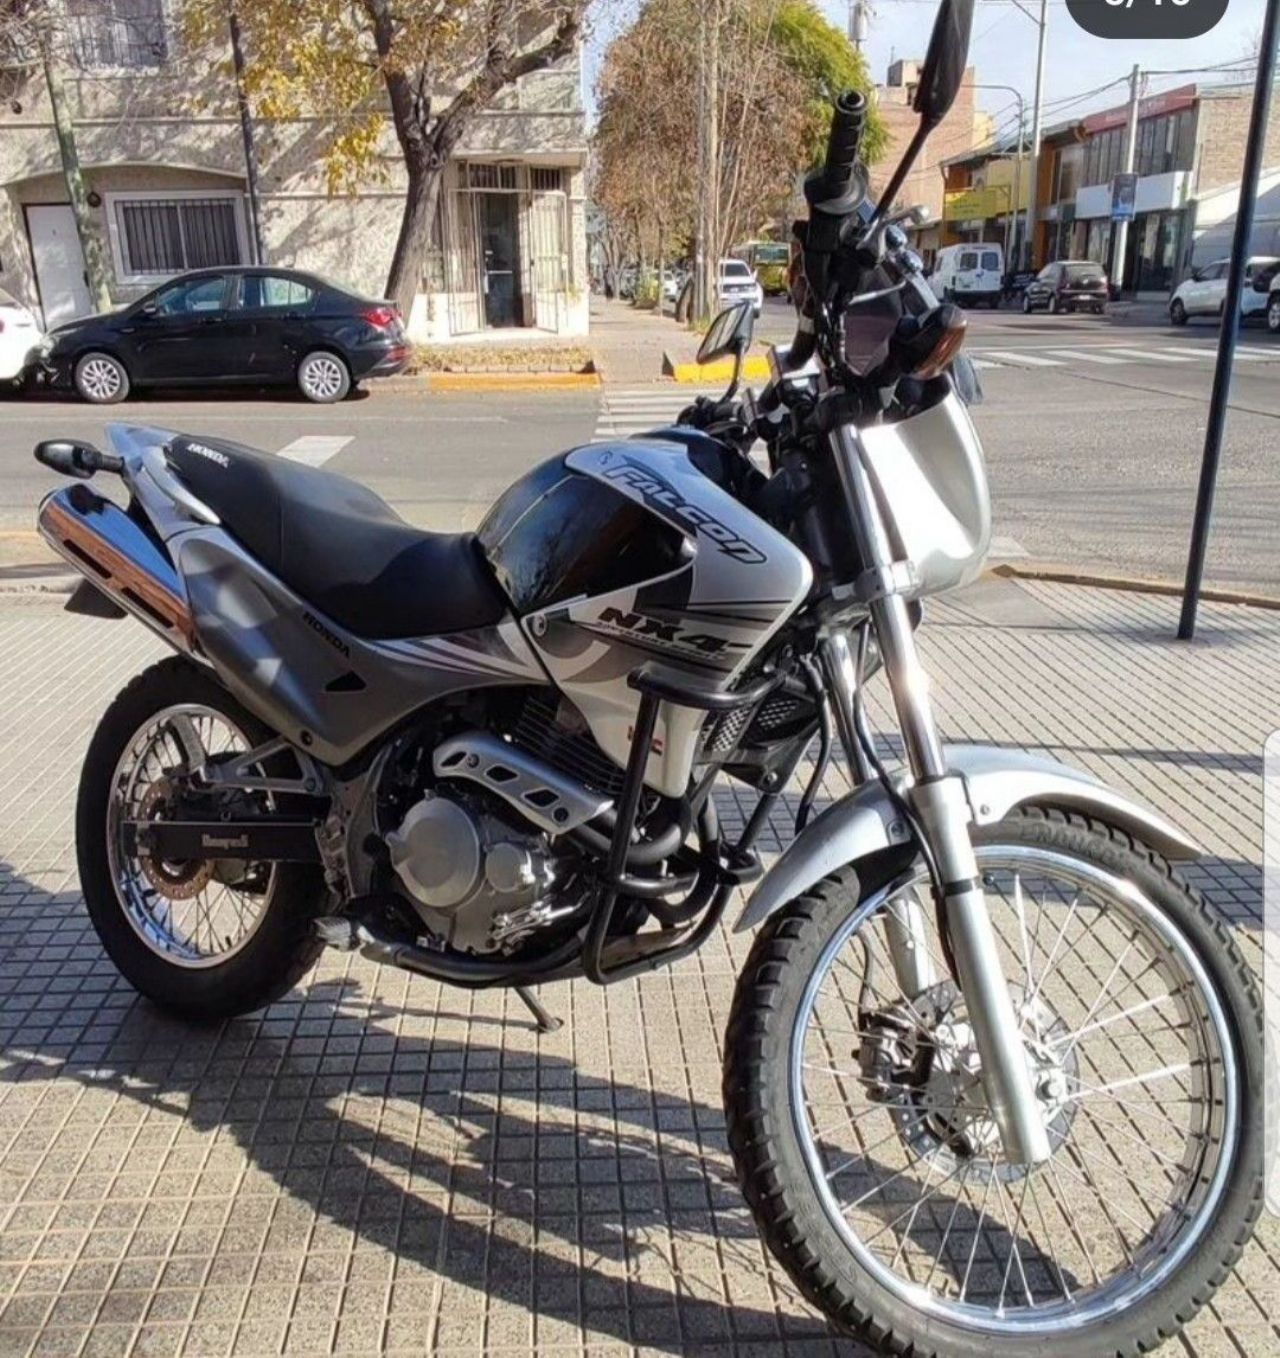 Honda NX Usada en Mendoza, deRuedas